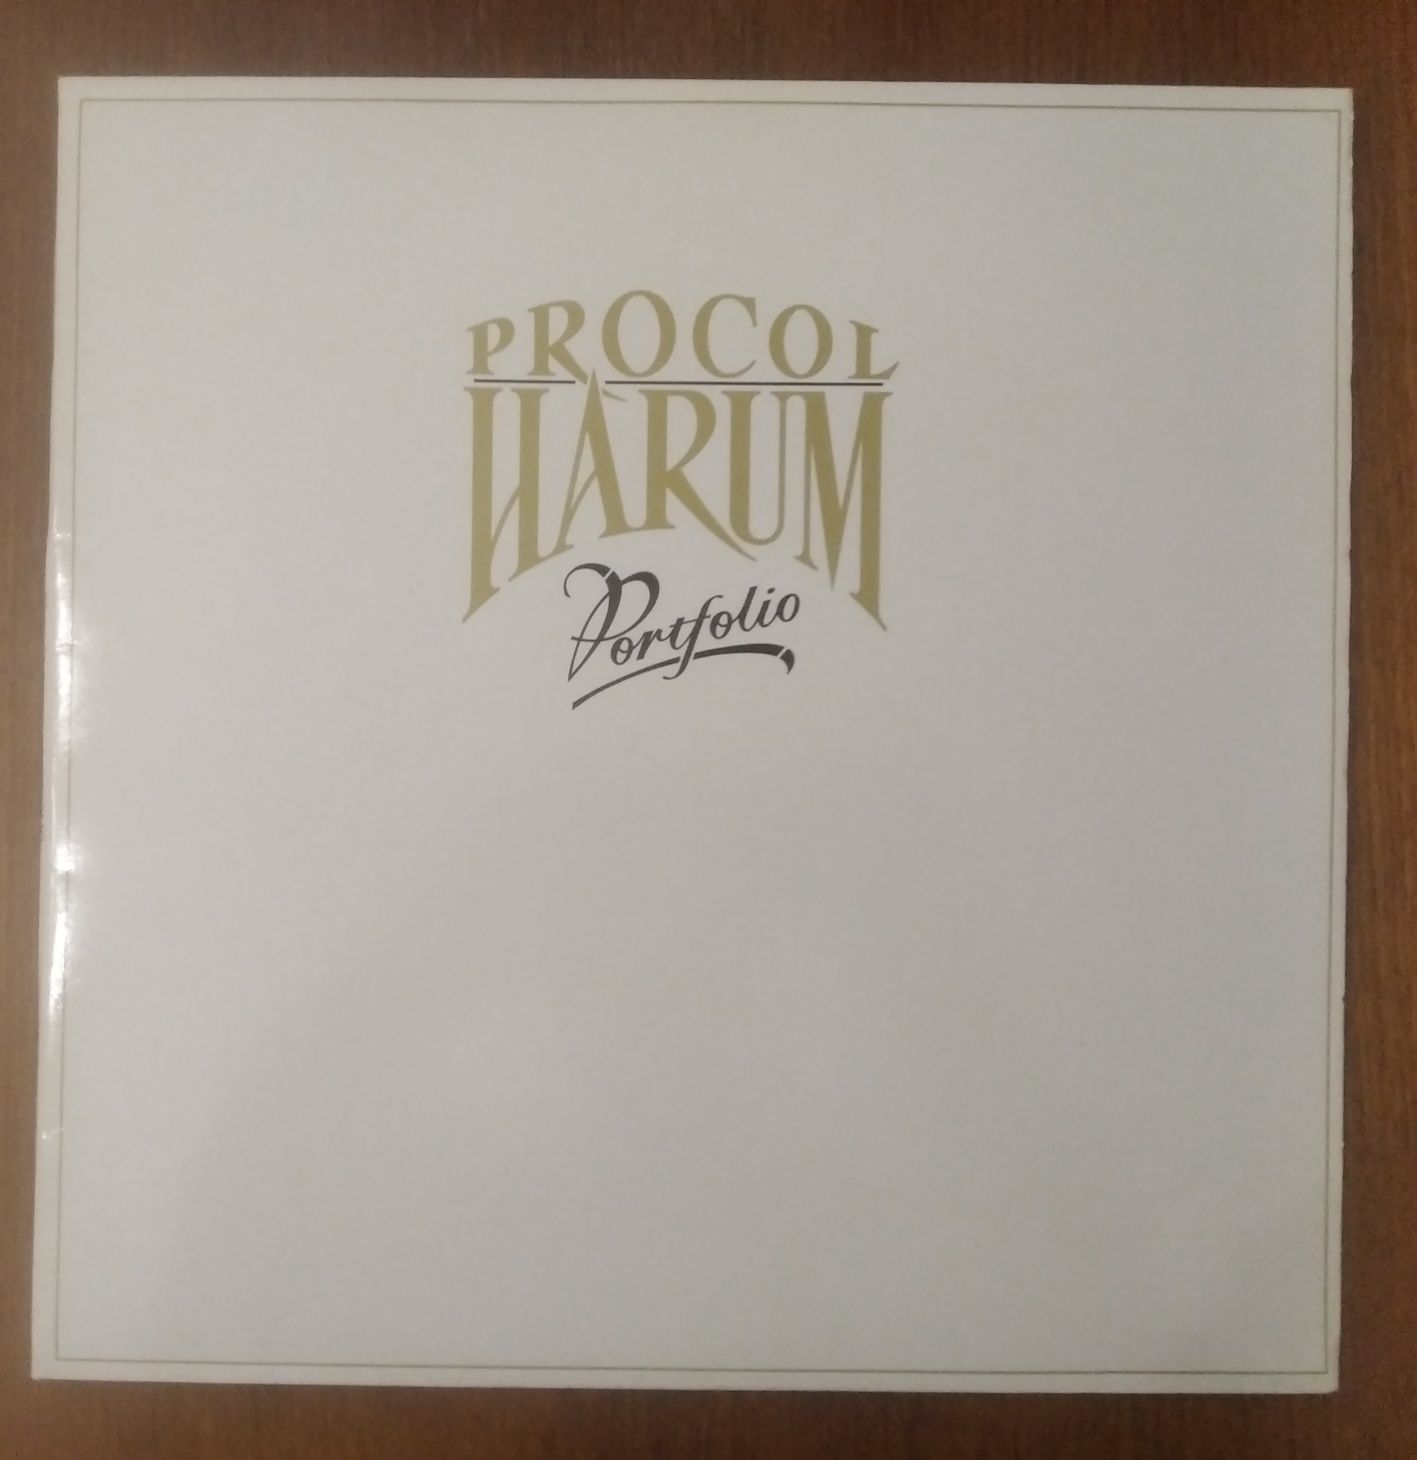 Procol Harum disco de vinil "Portfolio".